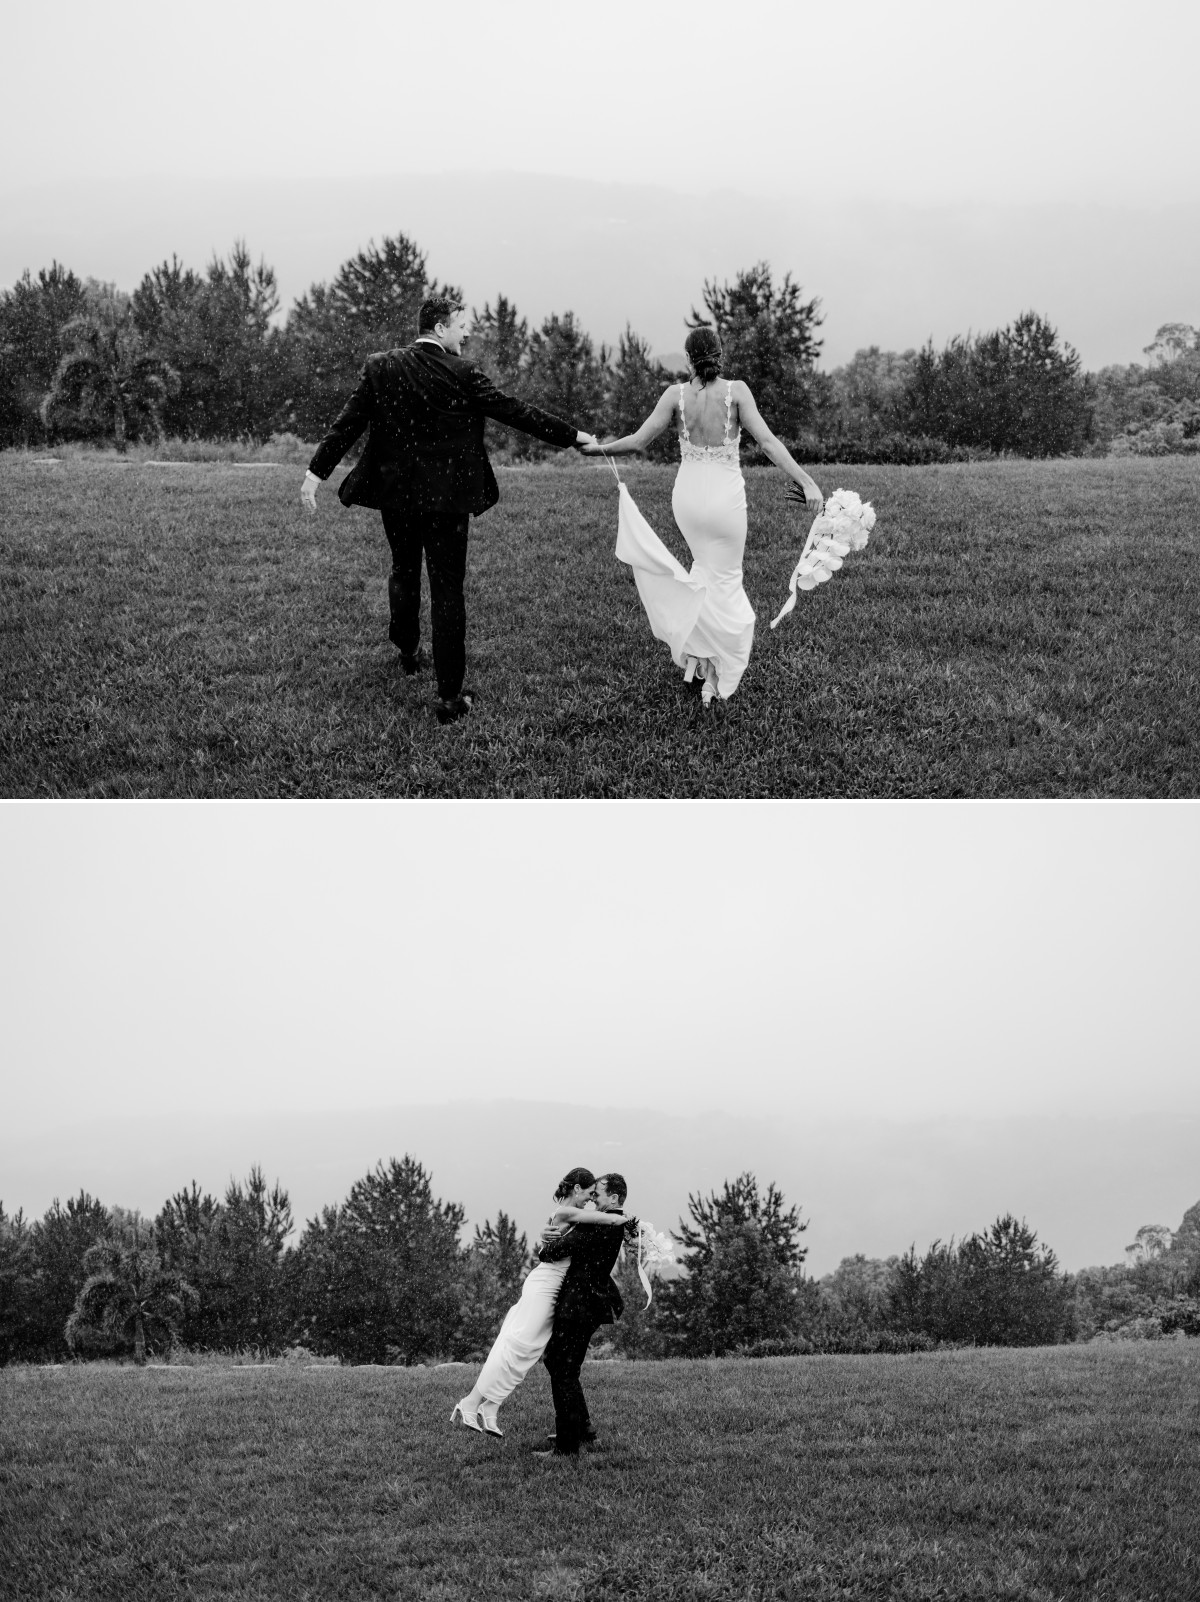 raining on wedding day